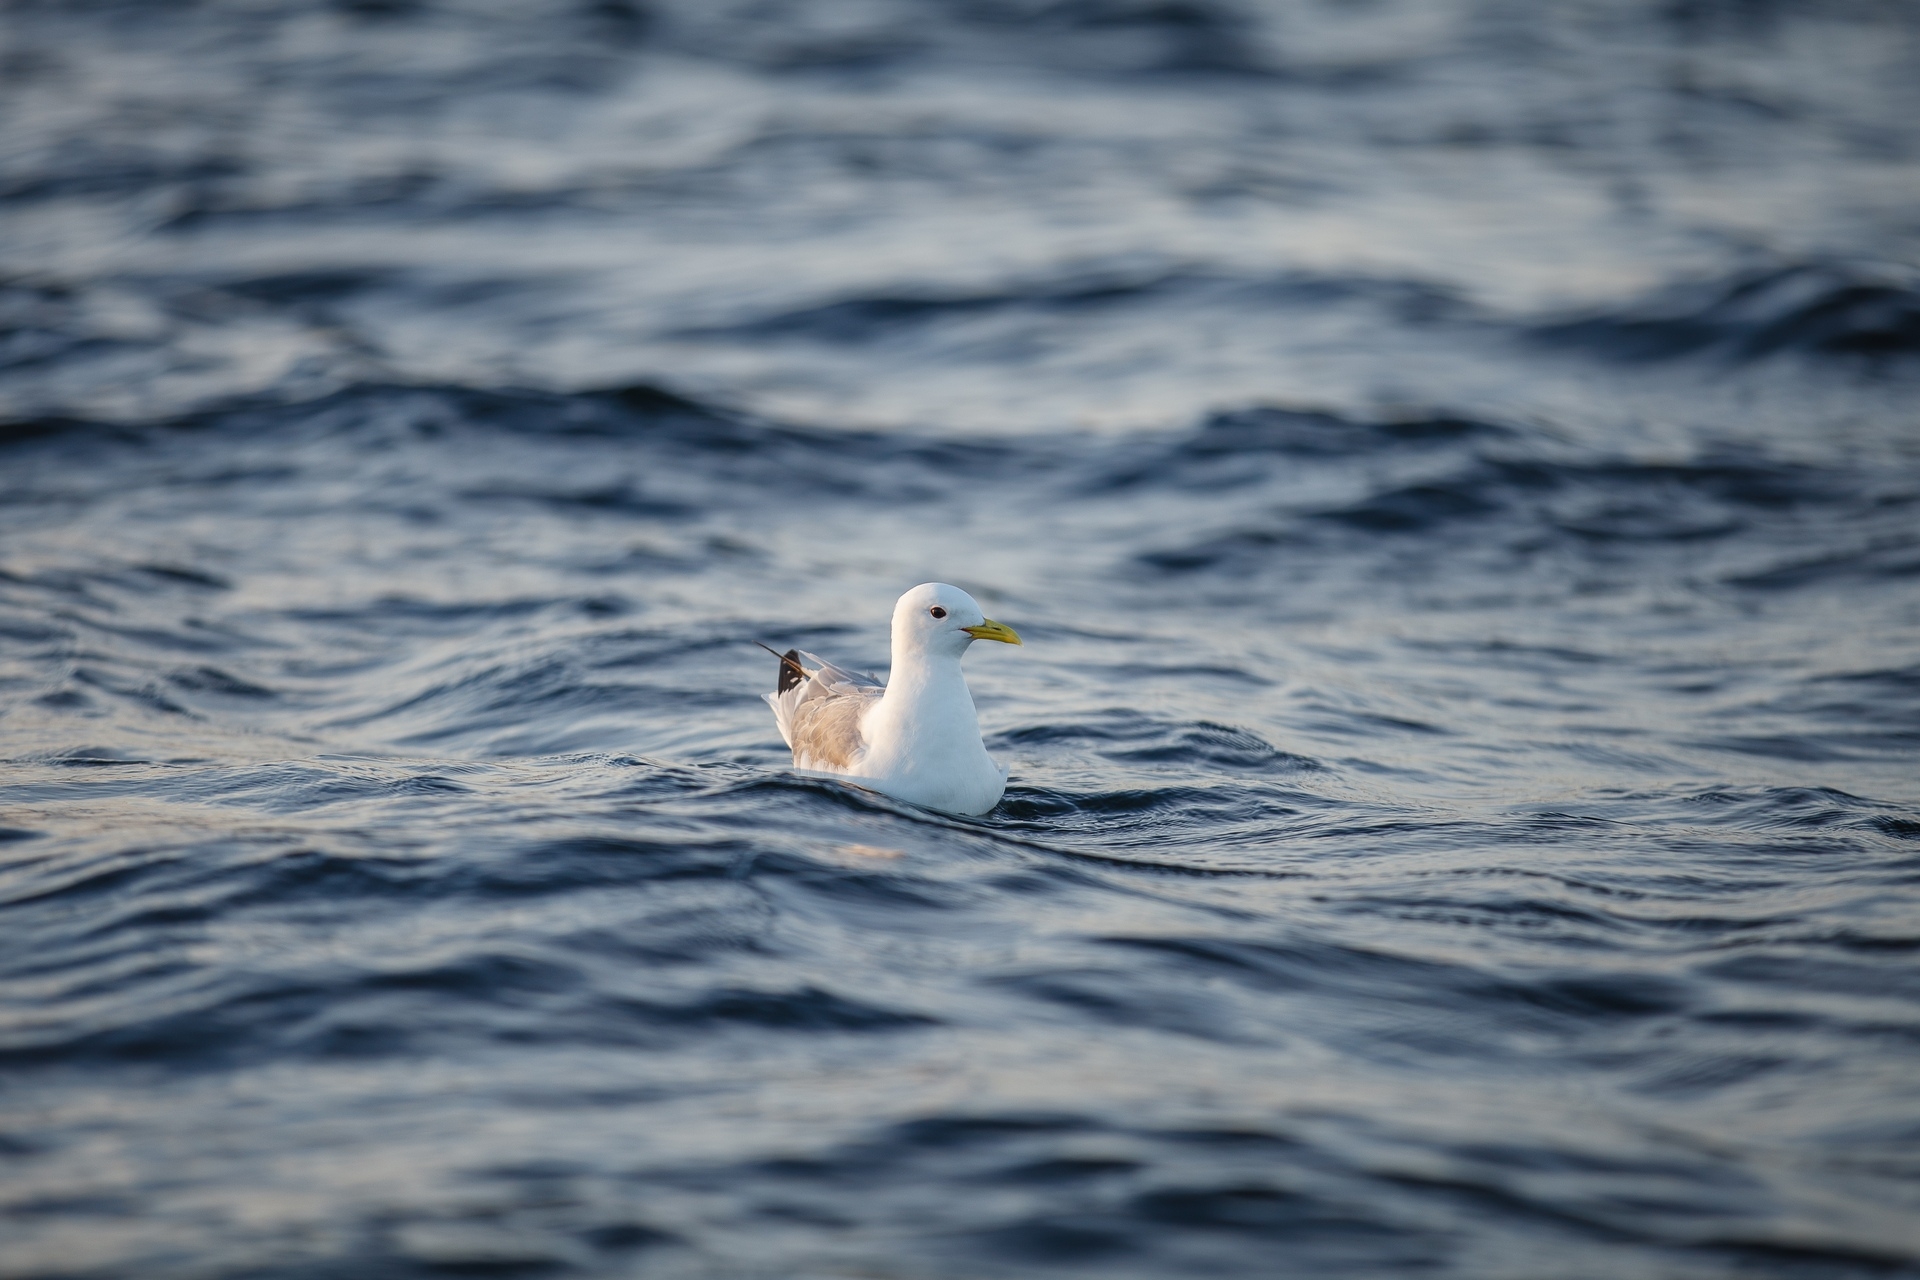 Petrolio: un uccello cullato dalle onde del mare